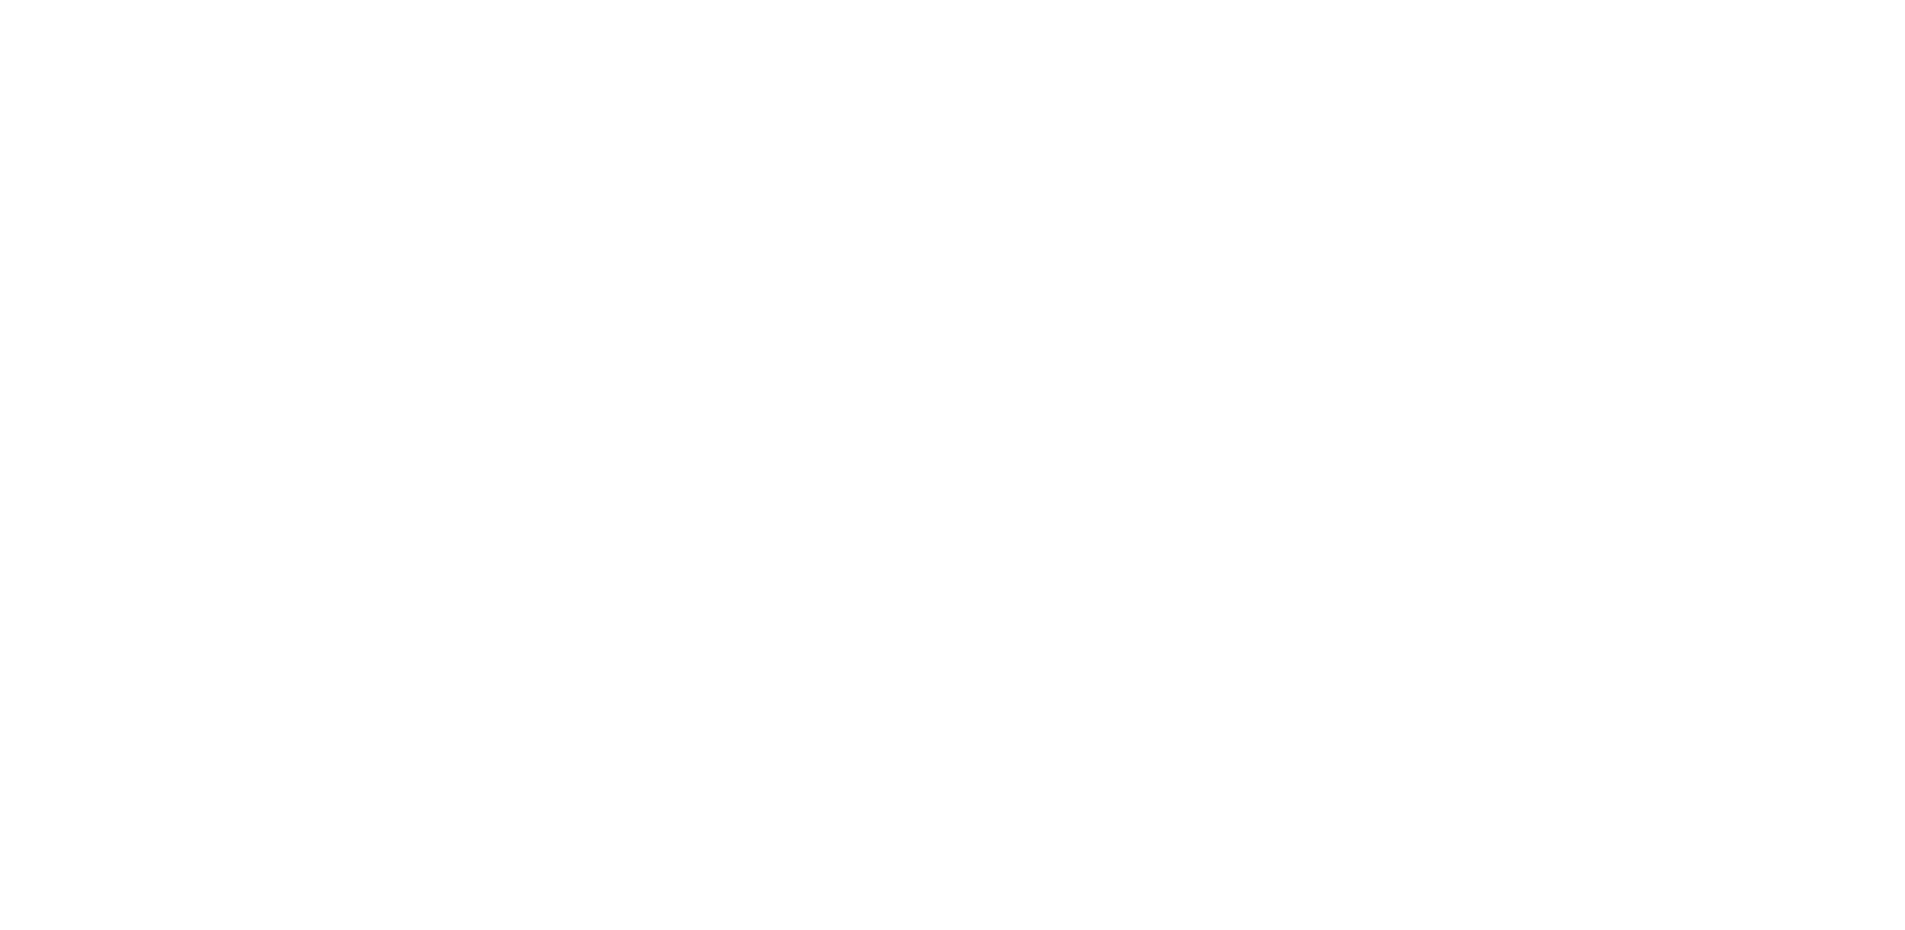 ERBA Markets